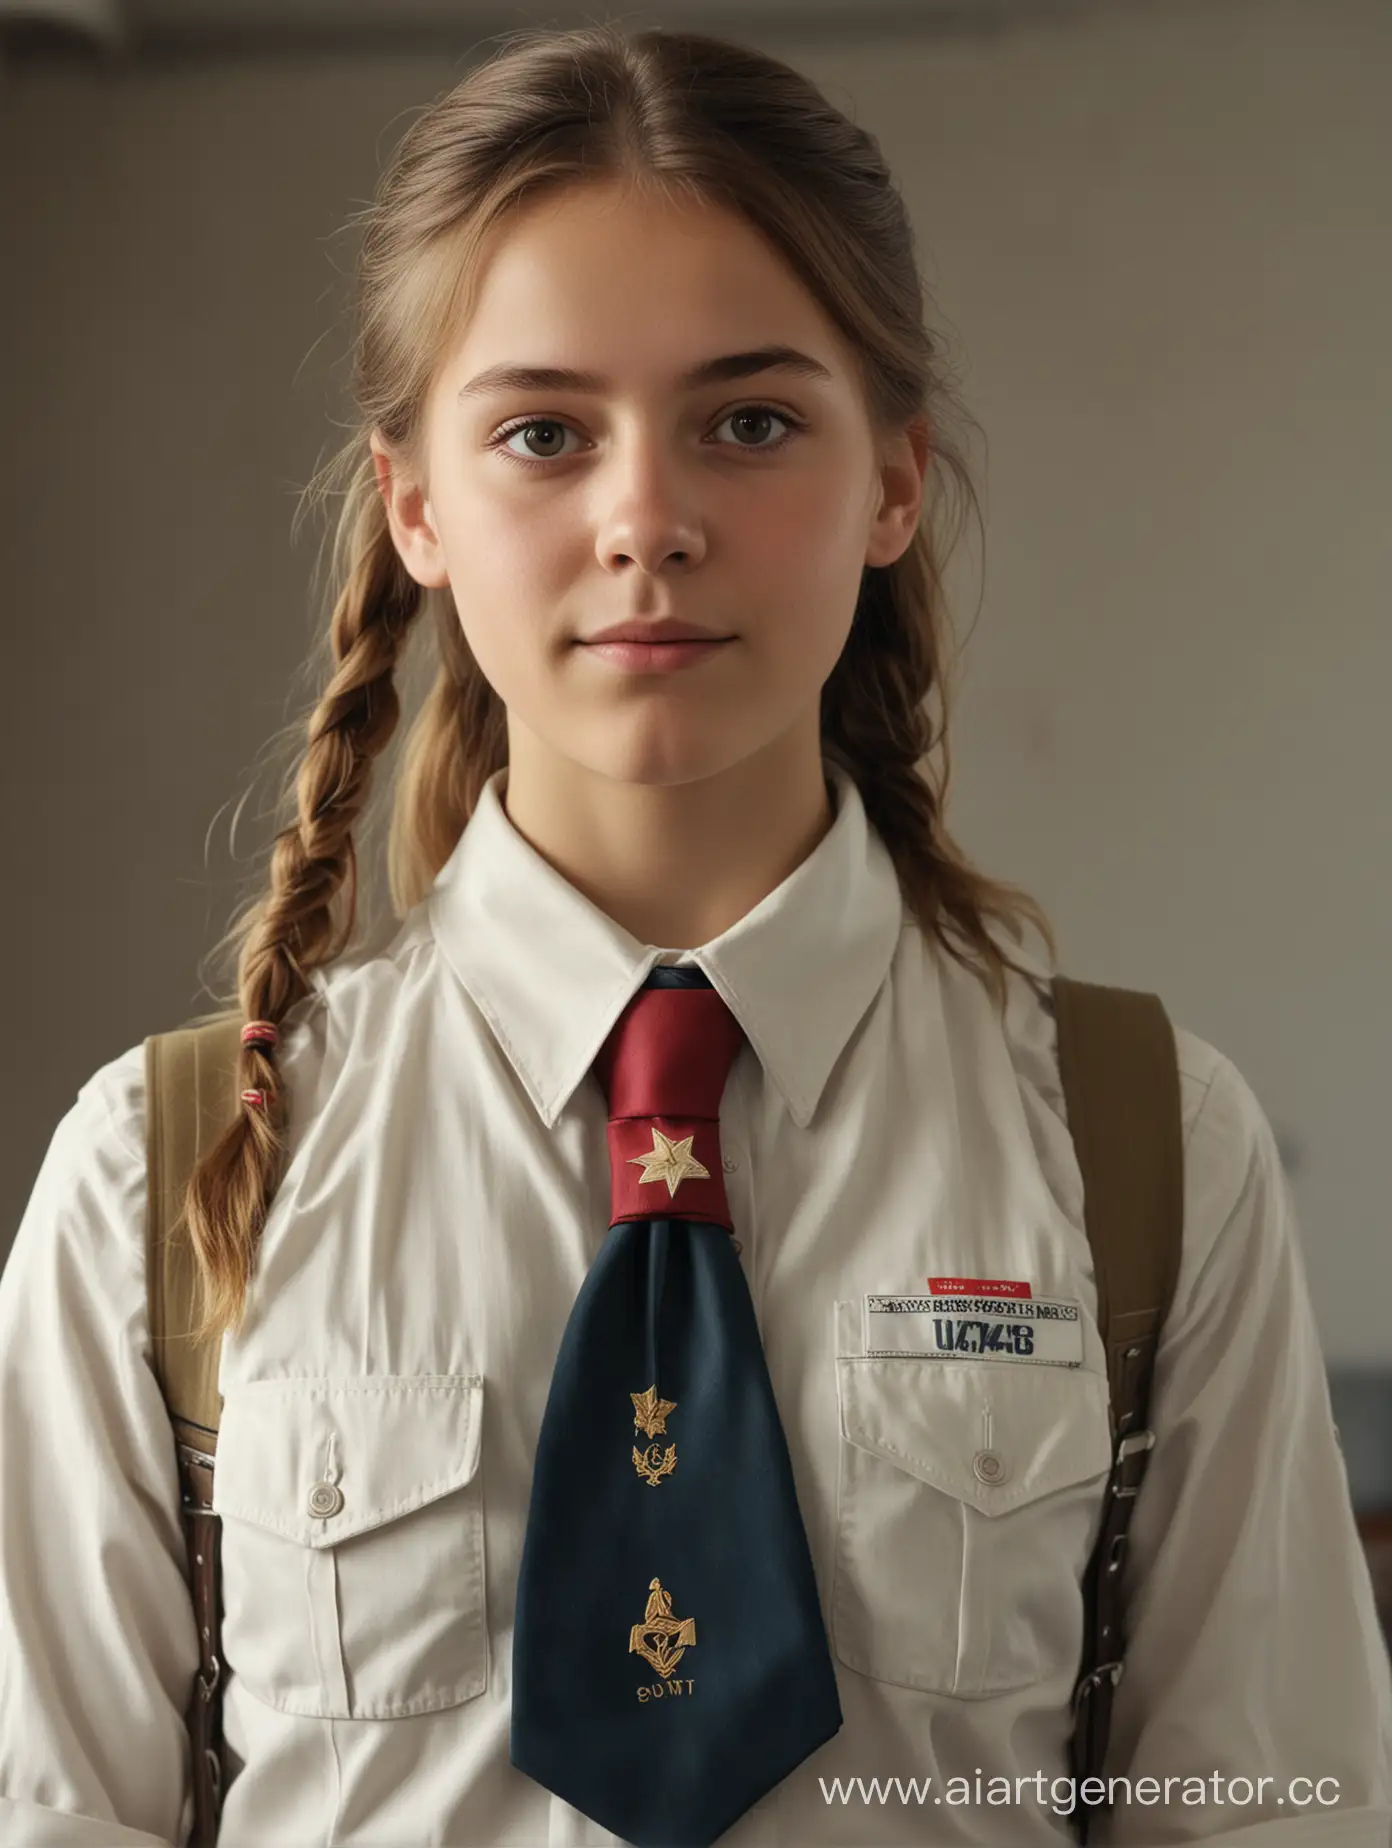 Realistic-8K-Portrait-of-Soviet-Pioneer-Girl-in-School-Uniform-with-Tie